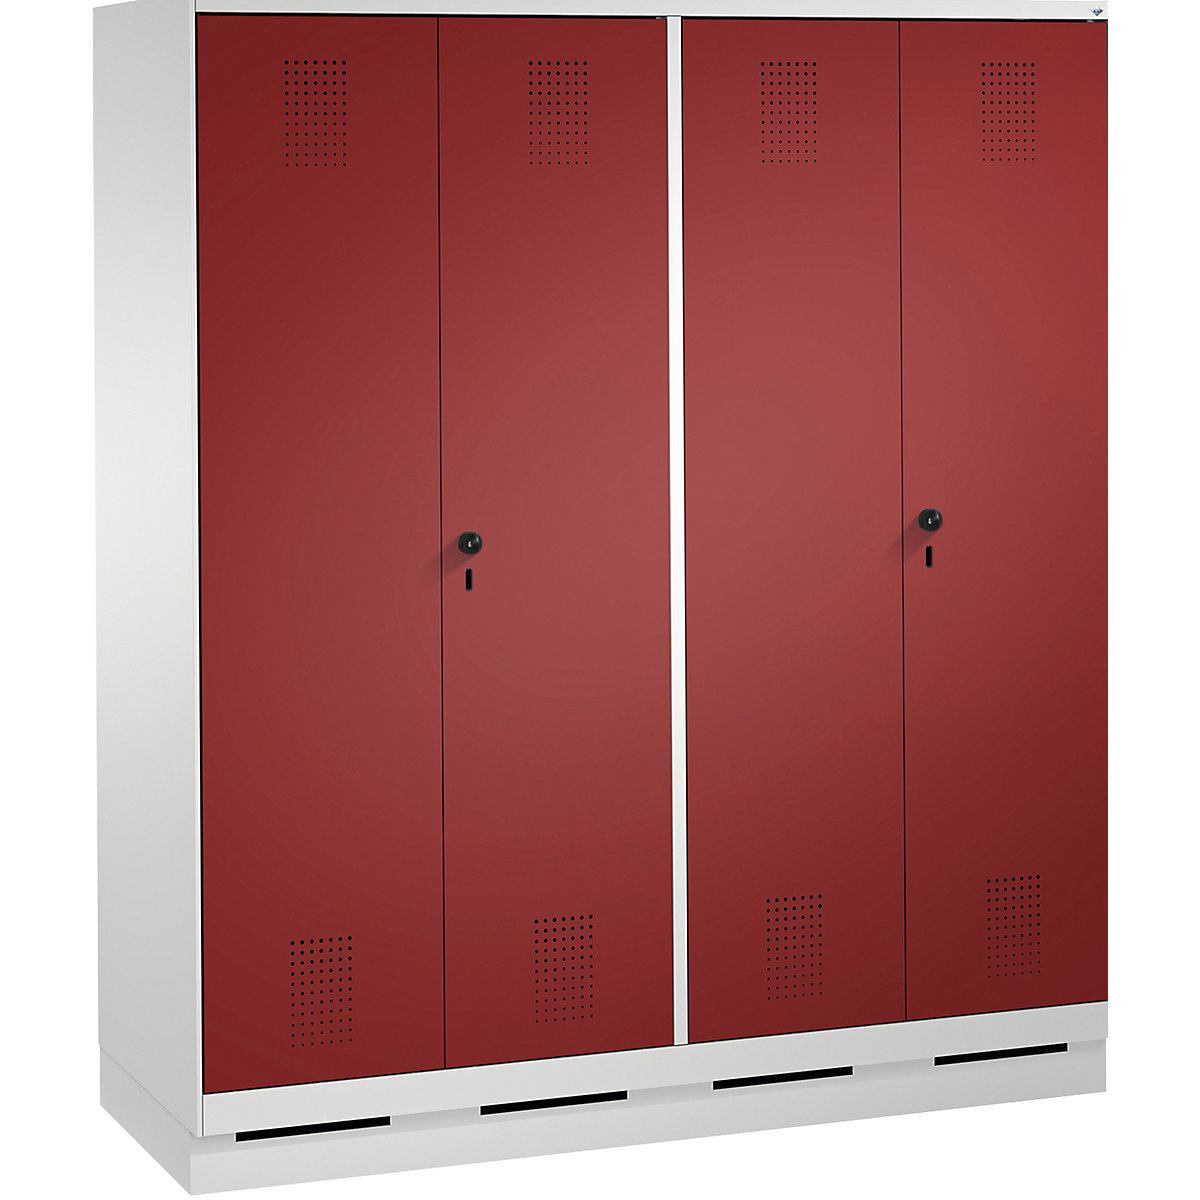 Szafa szatniowa EVOLO, drzwi zamykane do siebie – C+P, 4 przedziały, szer. przedziału 400 mm, z cokołem, jasnoszara / rubinowo-czerwona-3